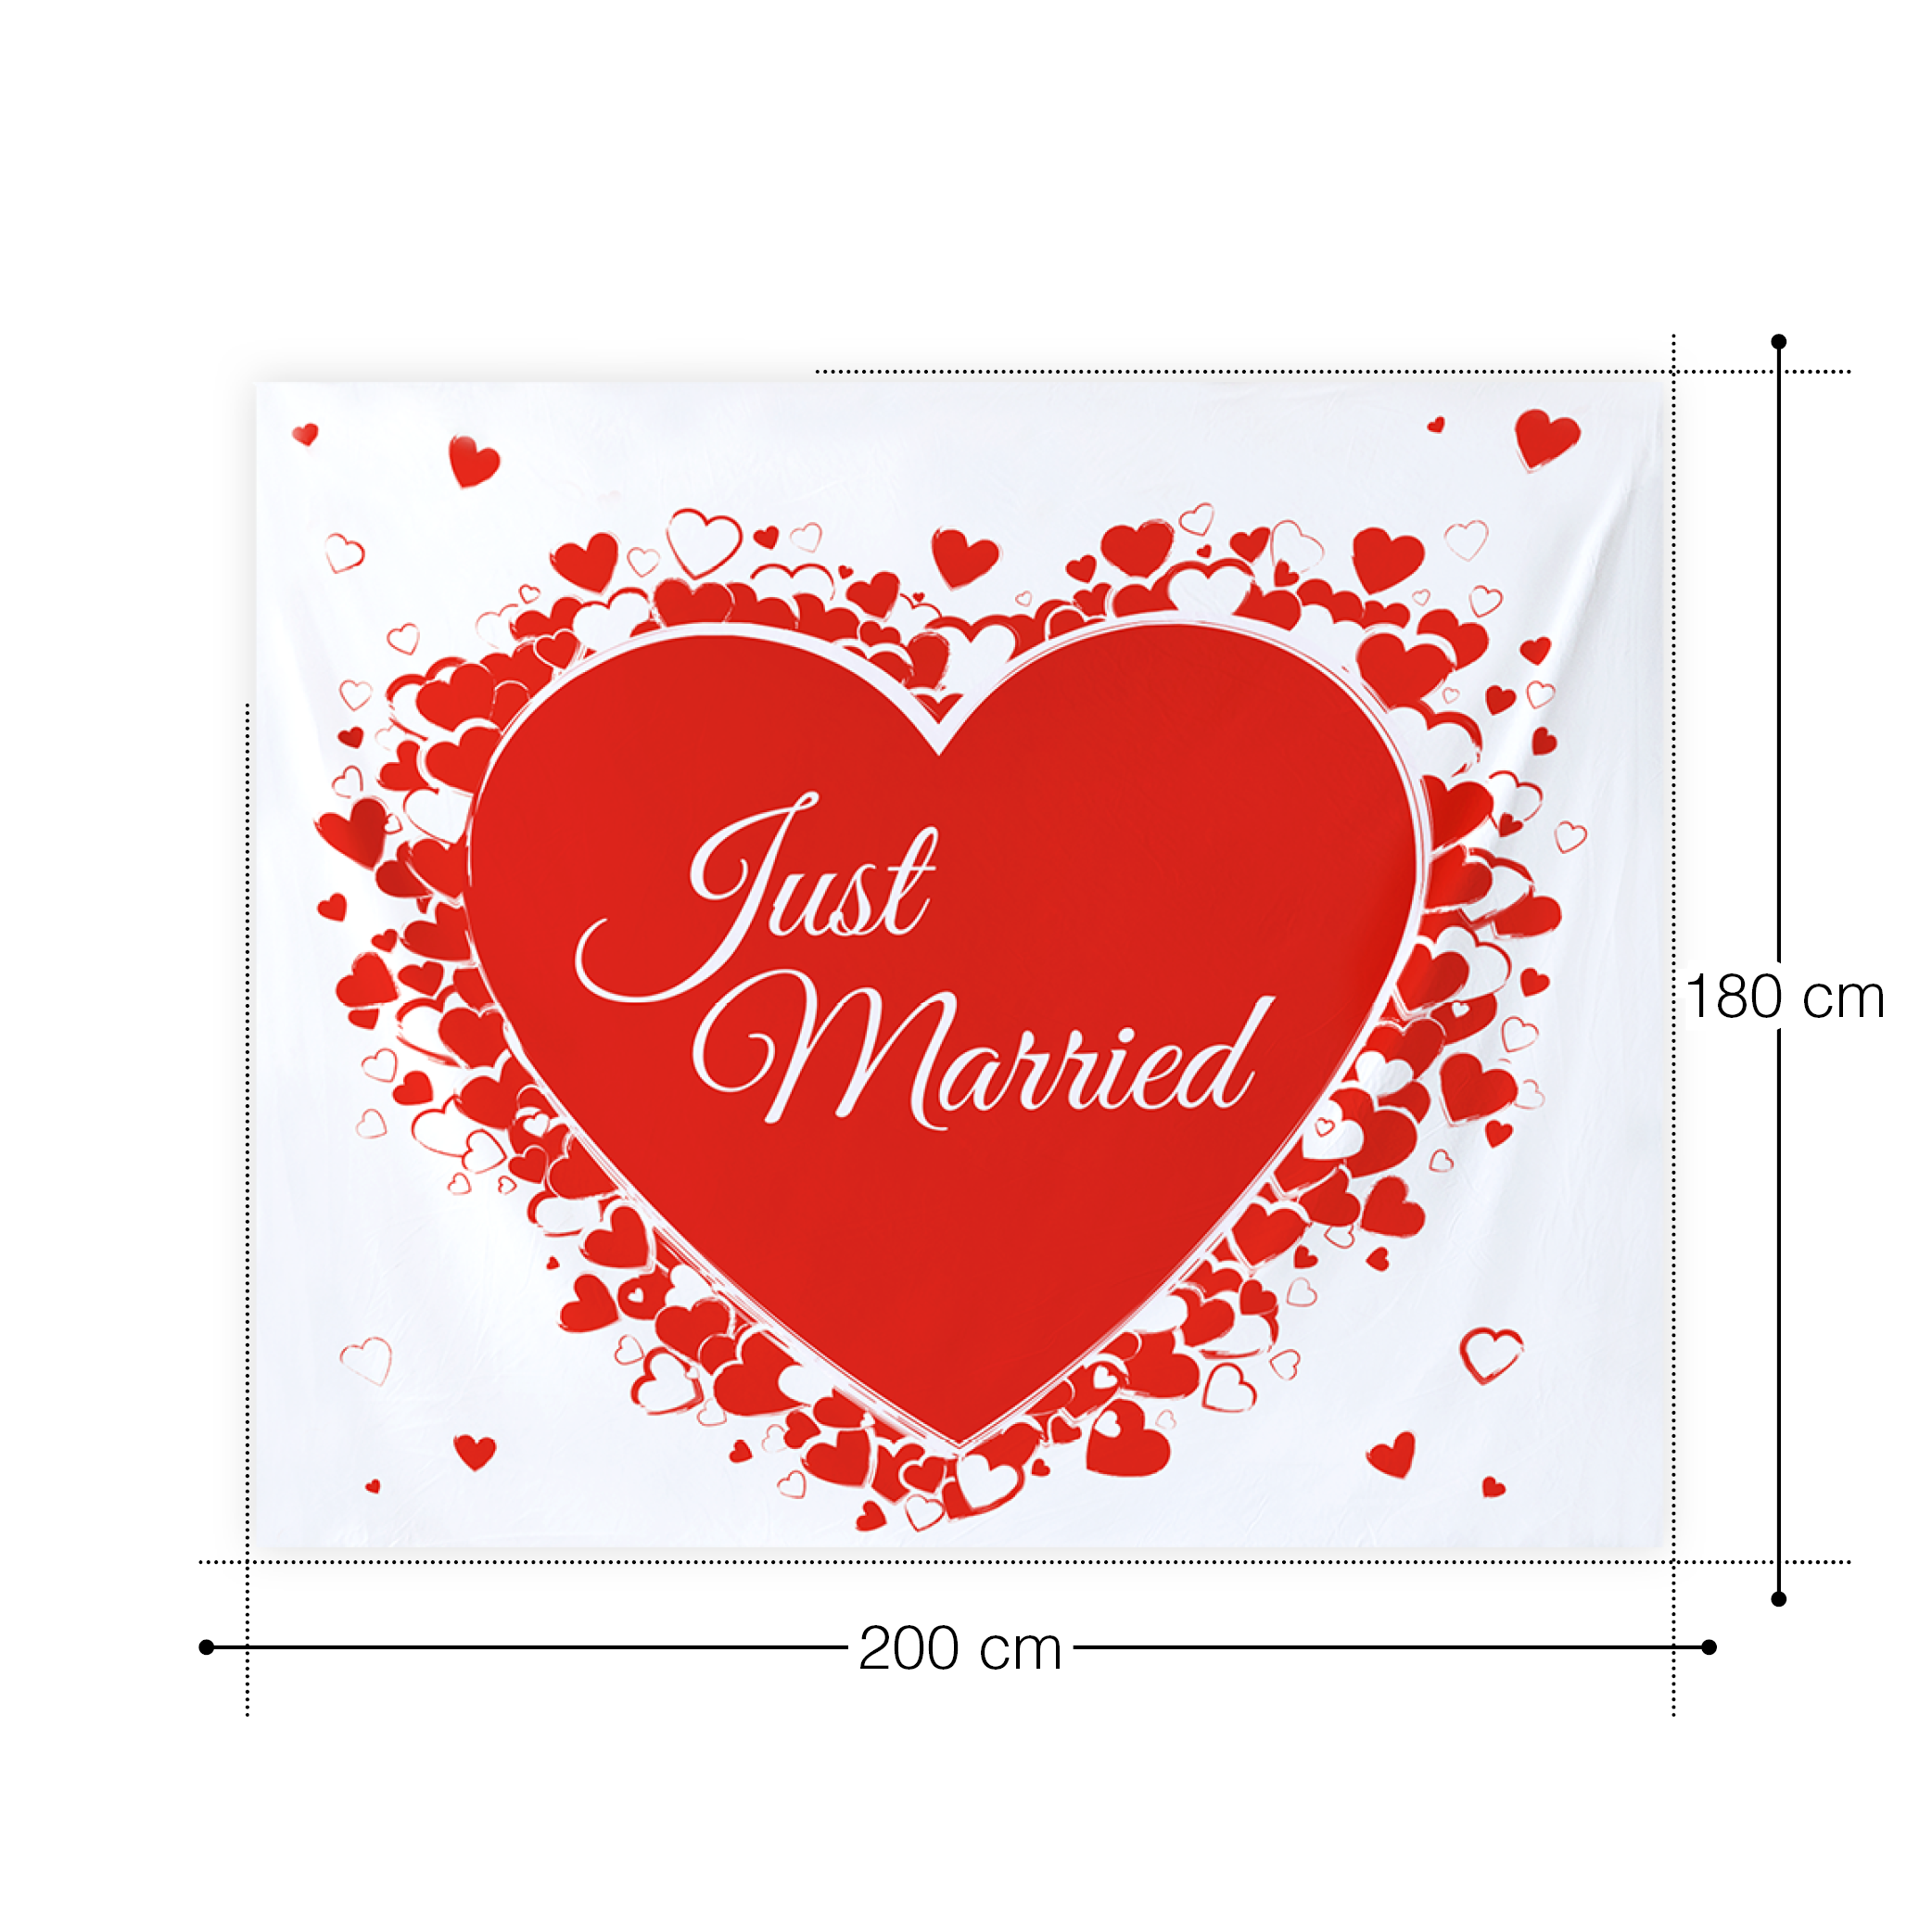 Hochzeitsset - 2 gravierte Sektgläser mit roten Herzen - Mr & Mrs - Hochzeitslaken